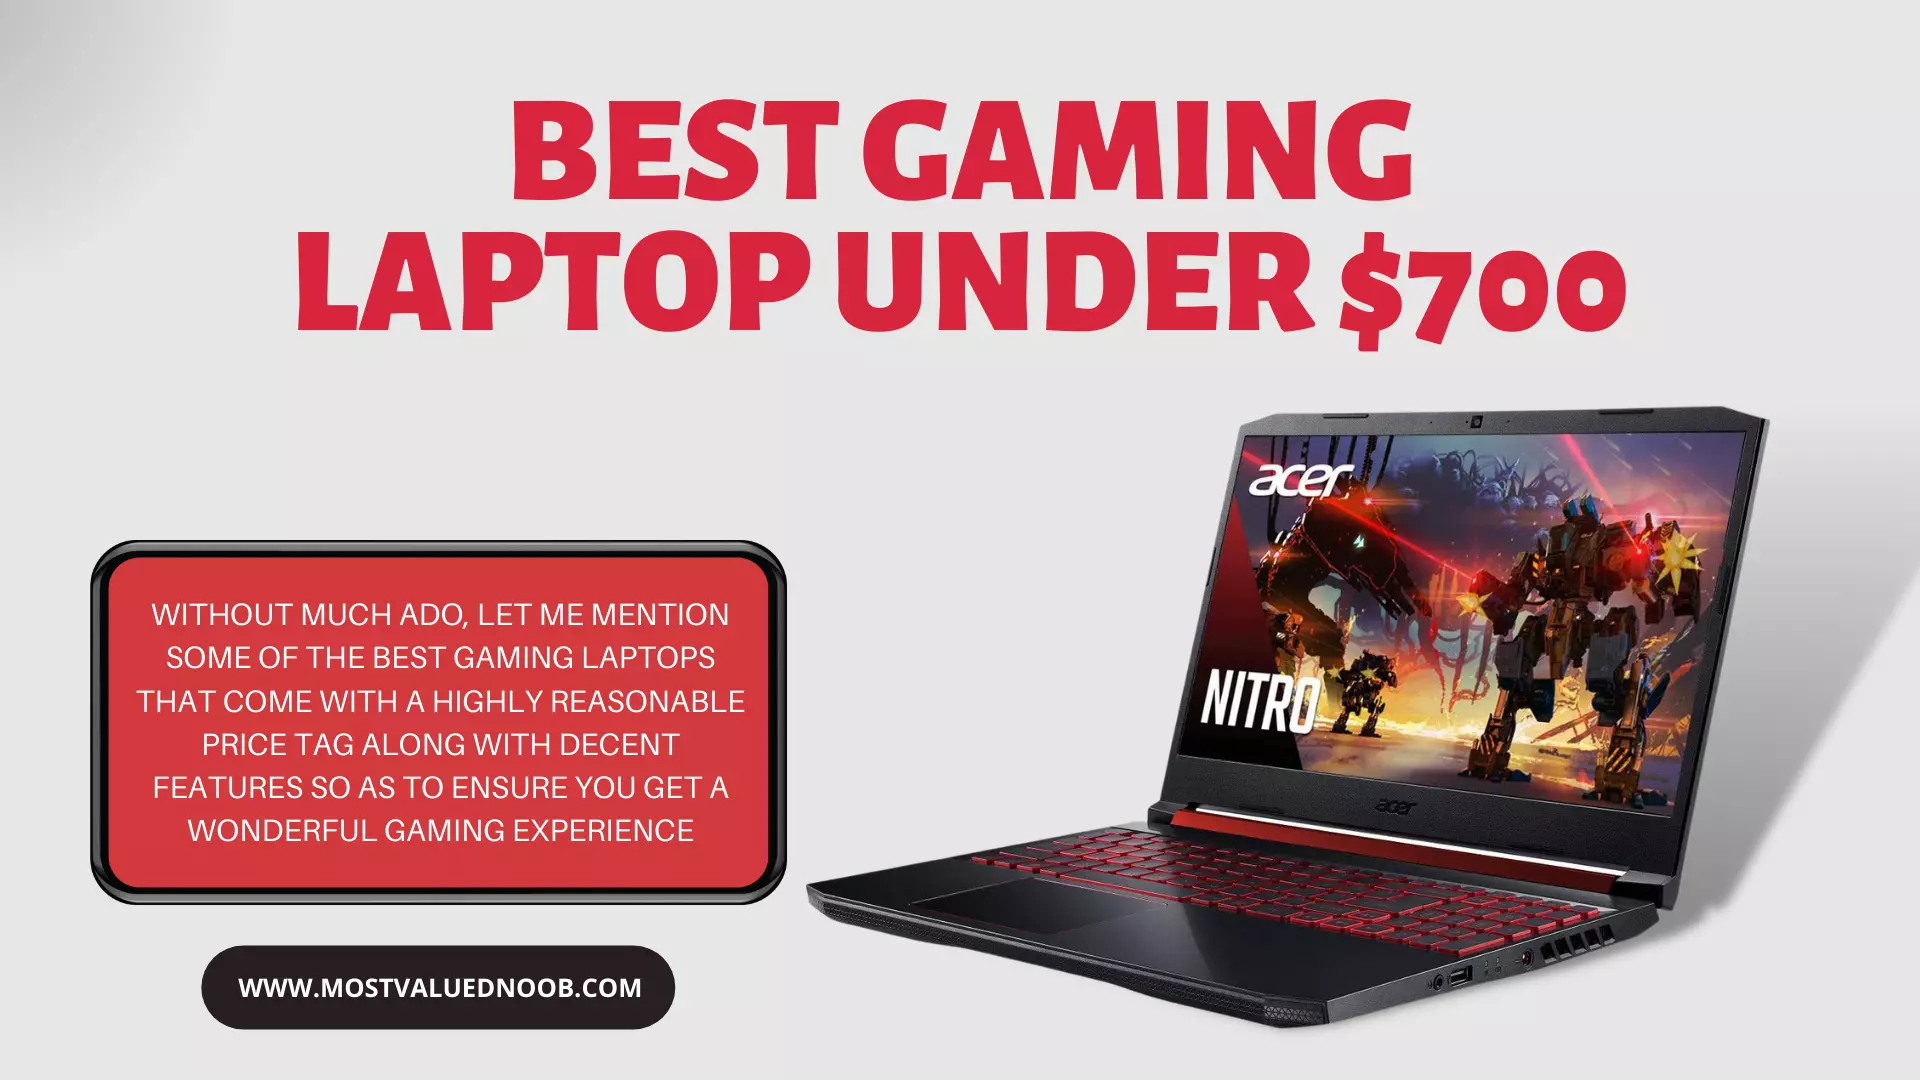 Best Gaming Laptop Under 700